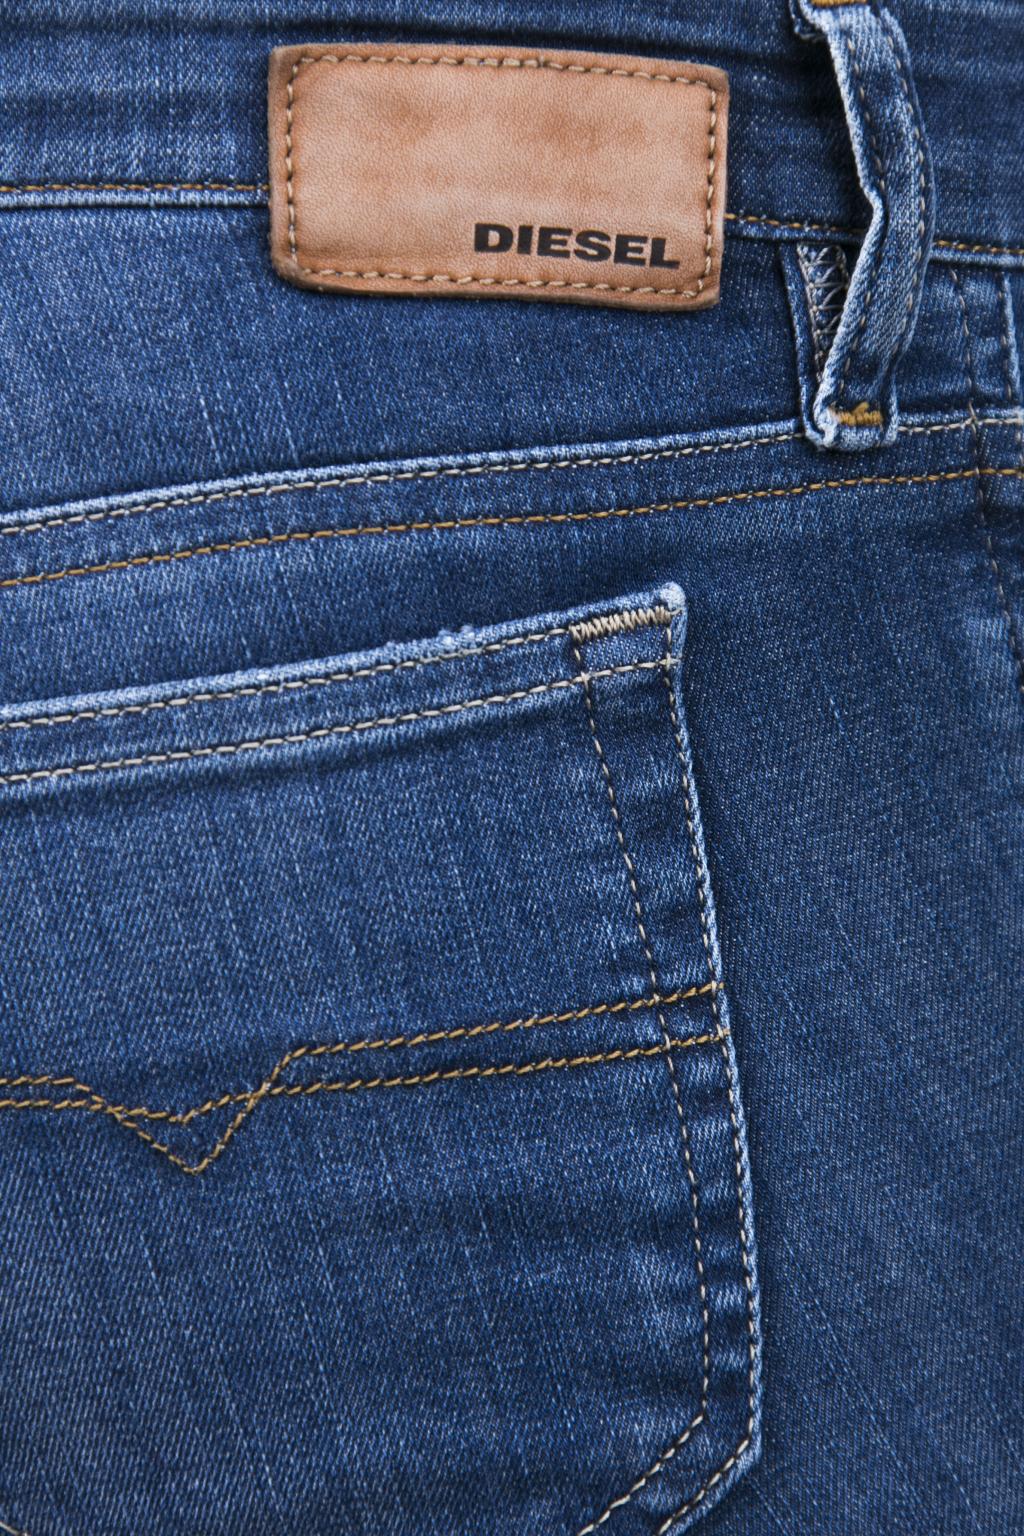 Diesel 'Skinzee - straight-leg jeans IetpShops | Women's Clothing - Low' Jeans